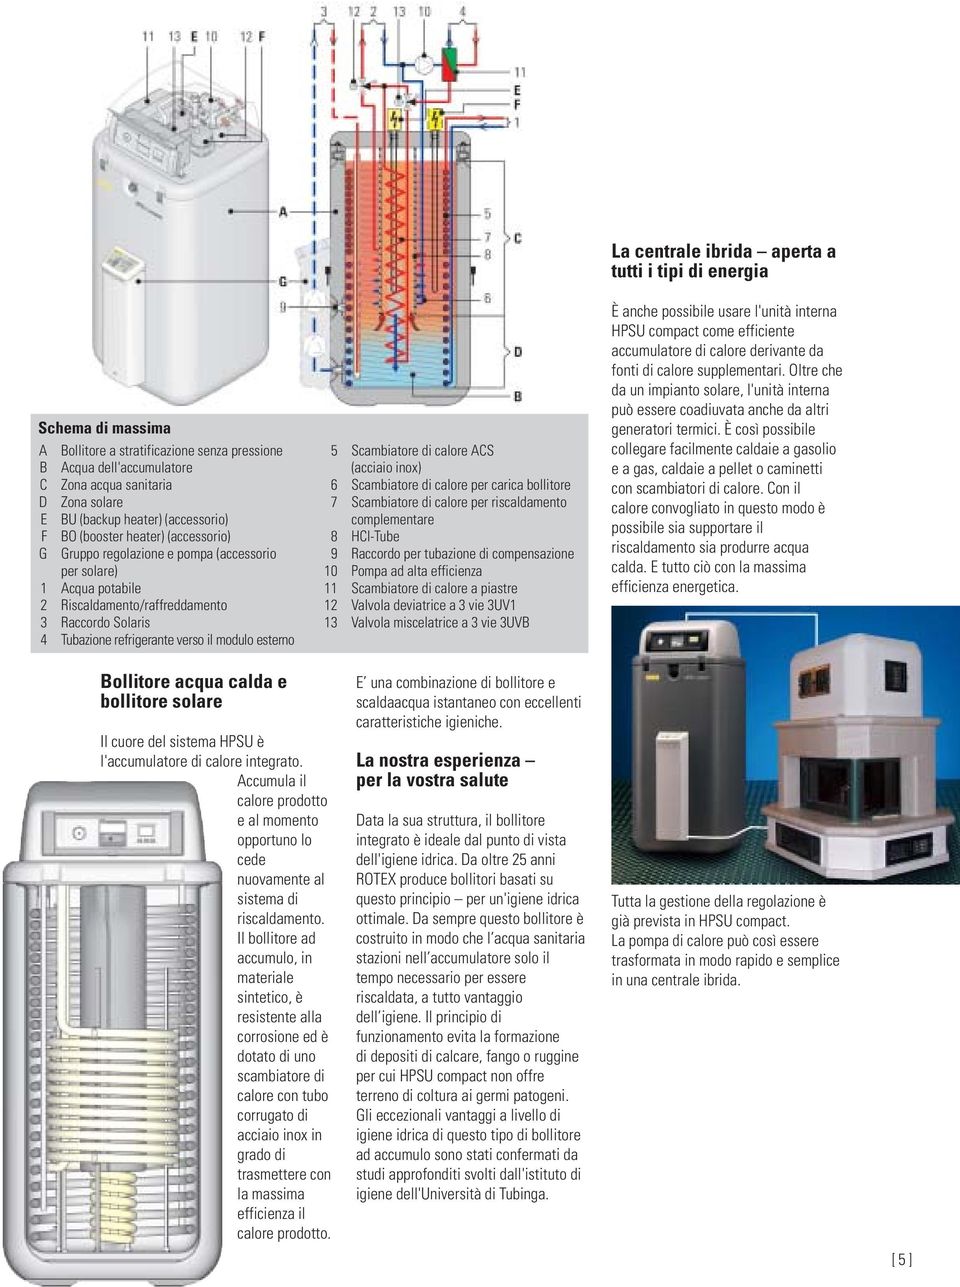 (acciaio inox) 6 Scambiatore di calore per carica bollitore 7 Scambiatore di calore per riscaldamento complementare 8 HCI-Tube 9 Raccordo per tubazione di compensazione 10 Pompa ad alta efficienza 11